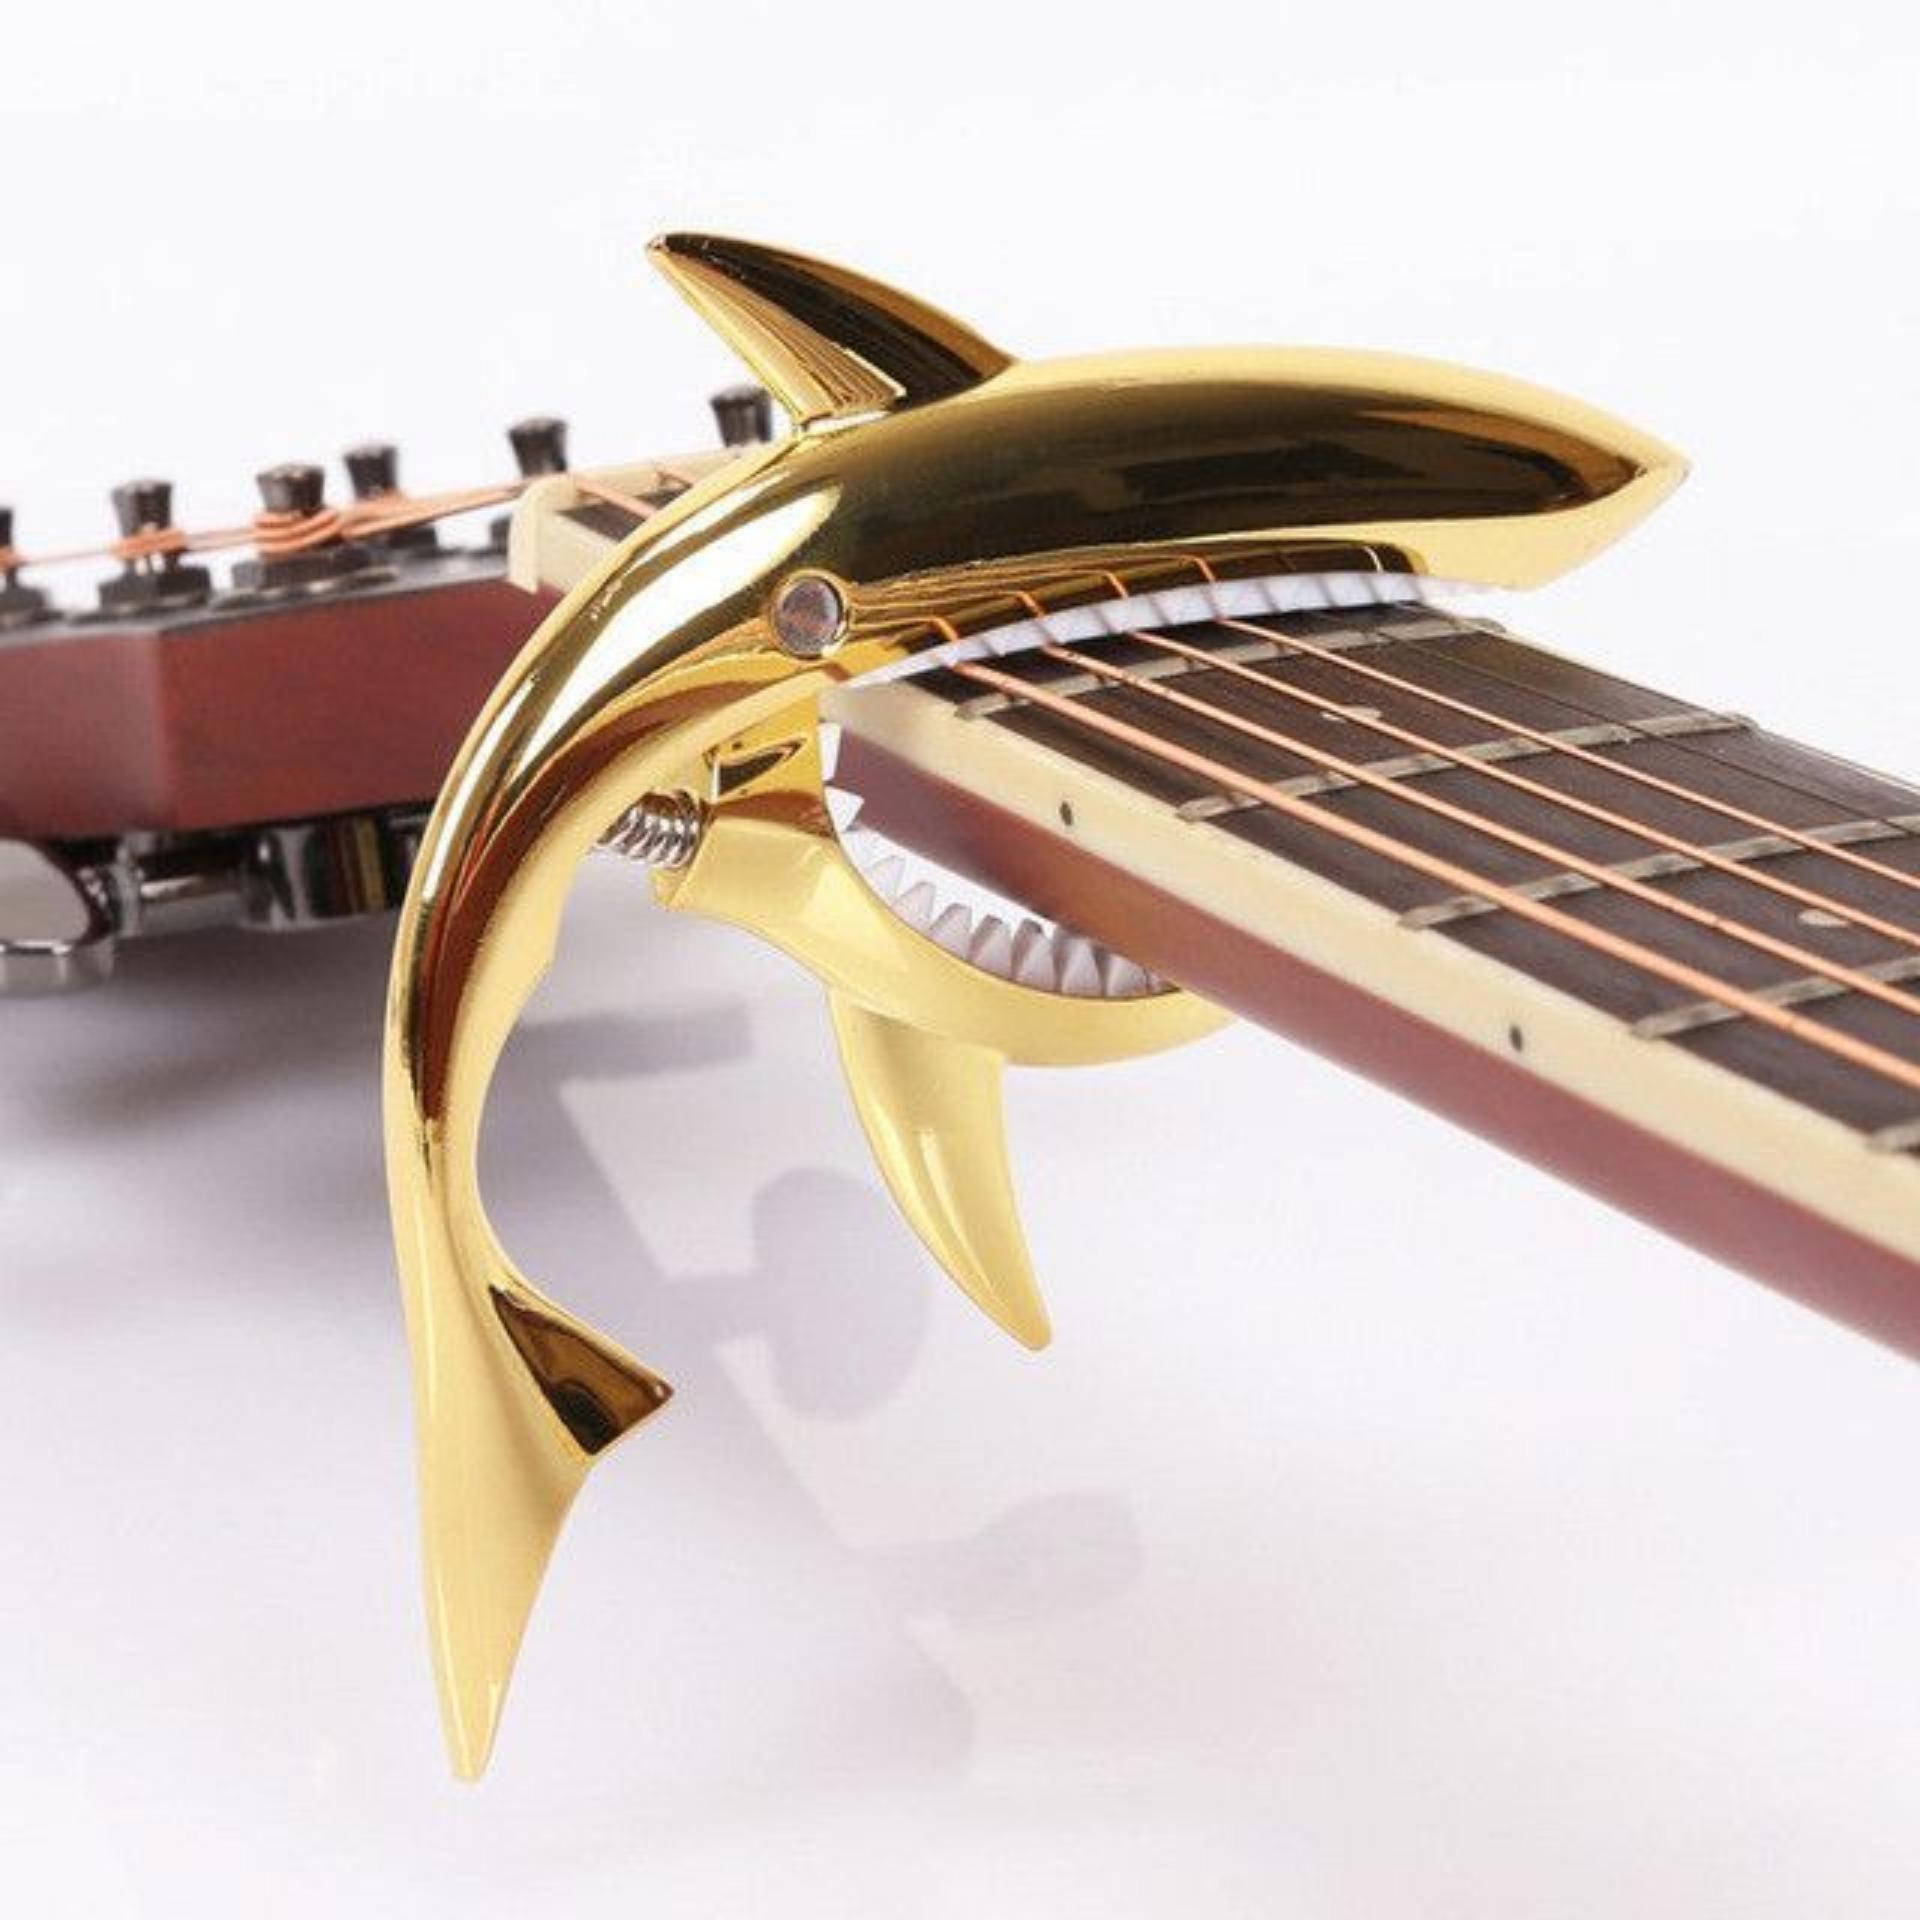 Capo cá mập màu vàng loại dài cho đàn Classic và Acoustic tặng pick